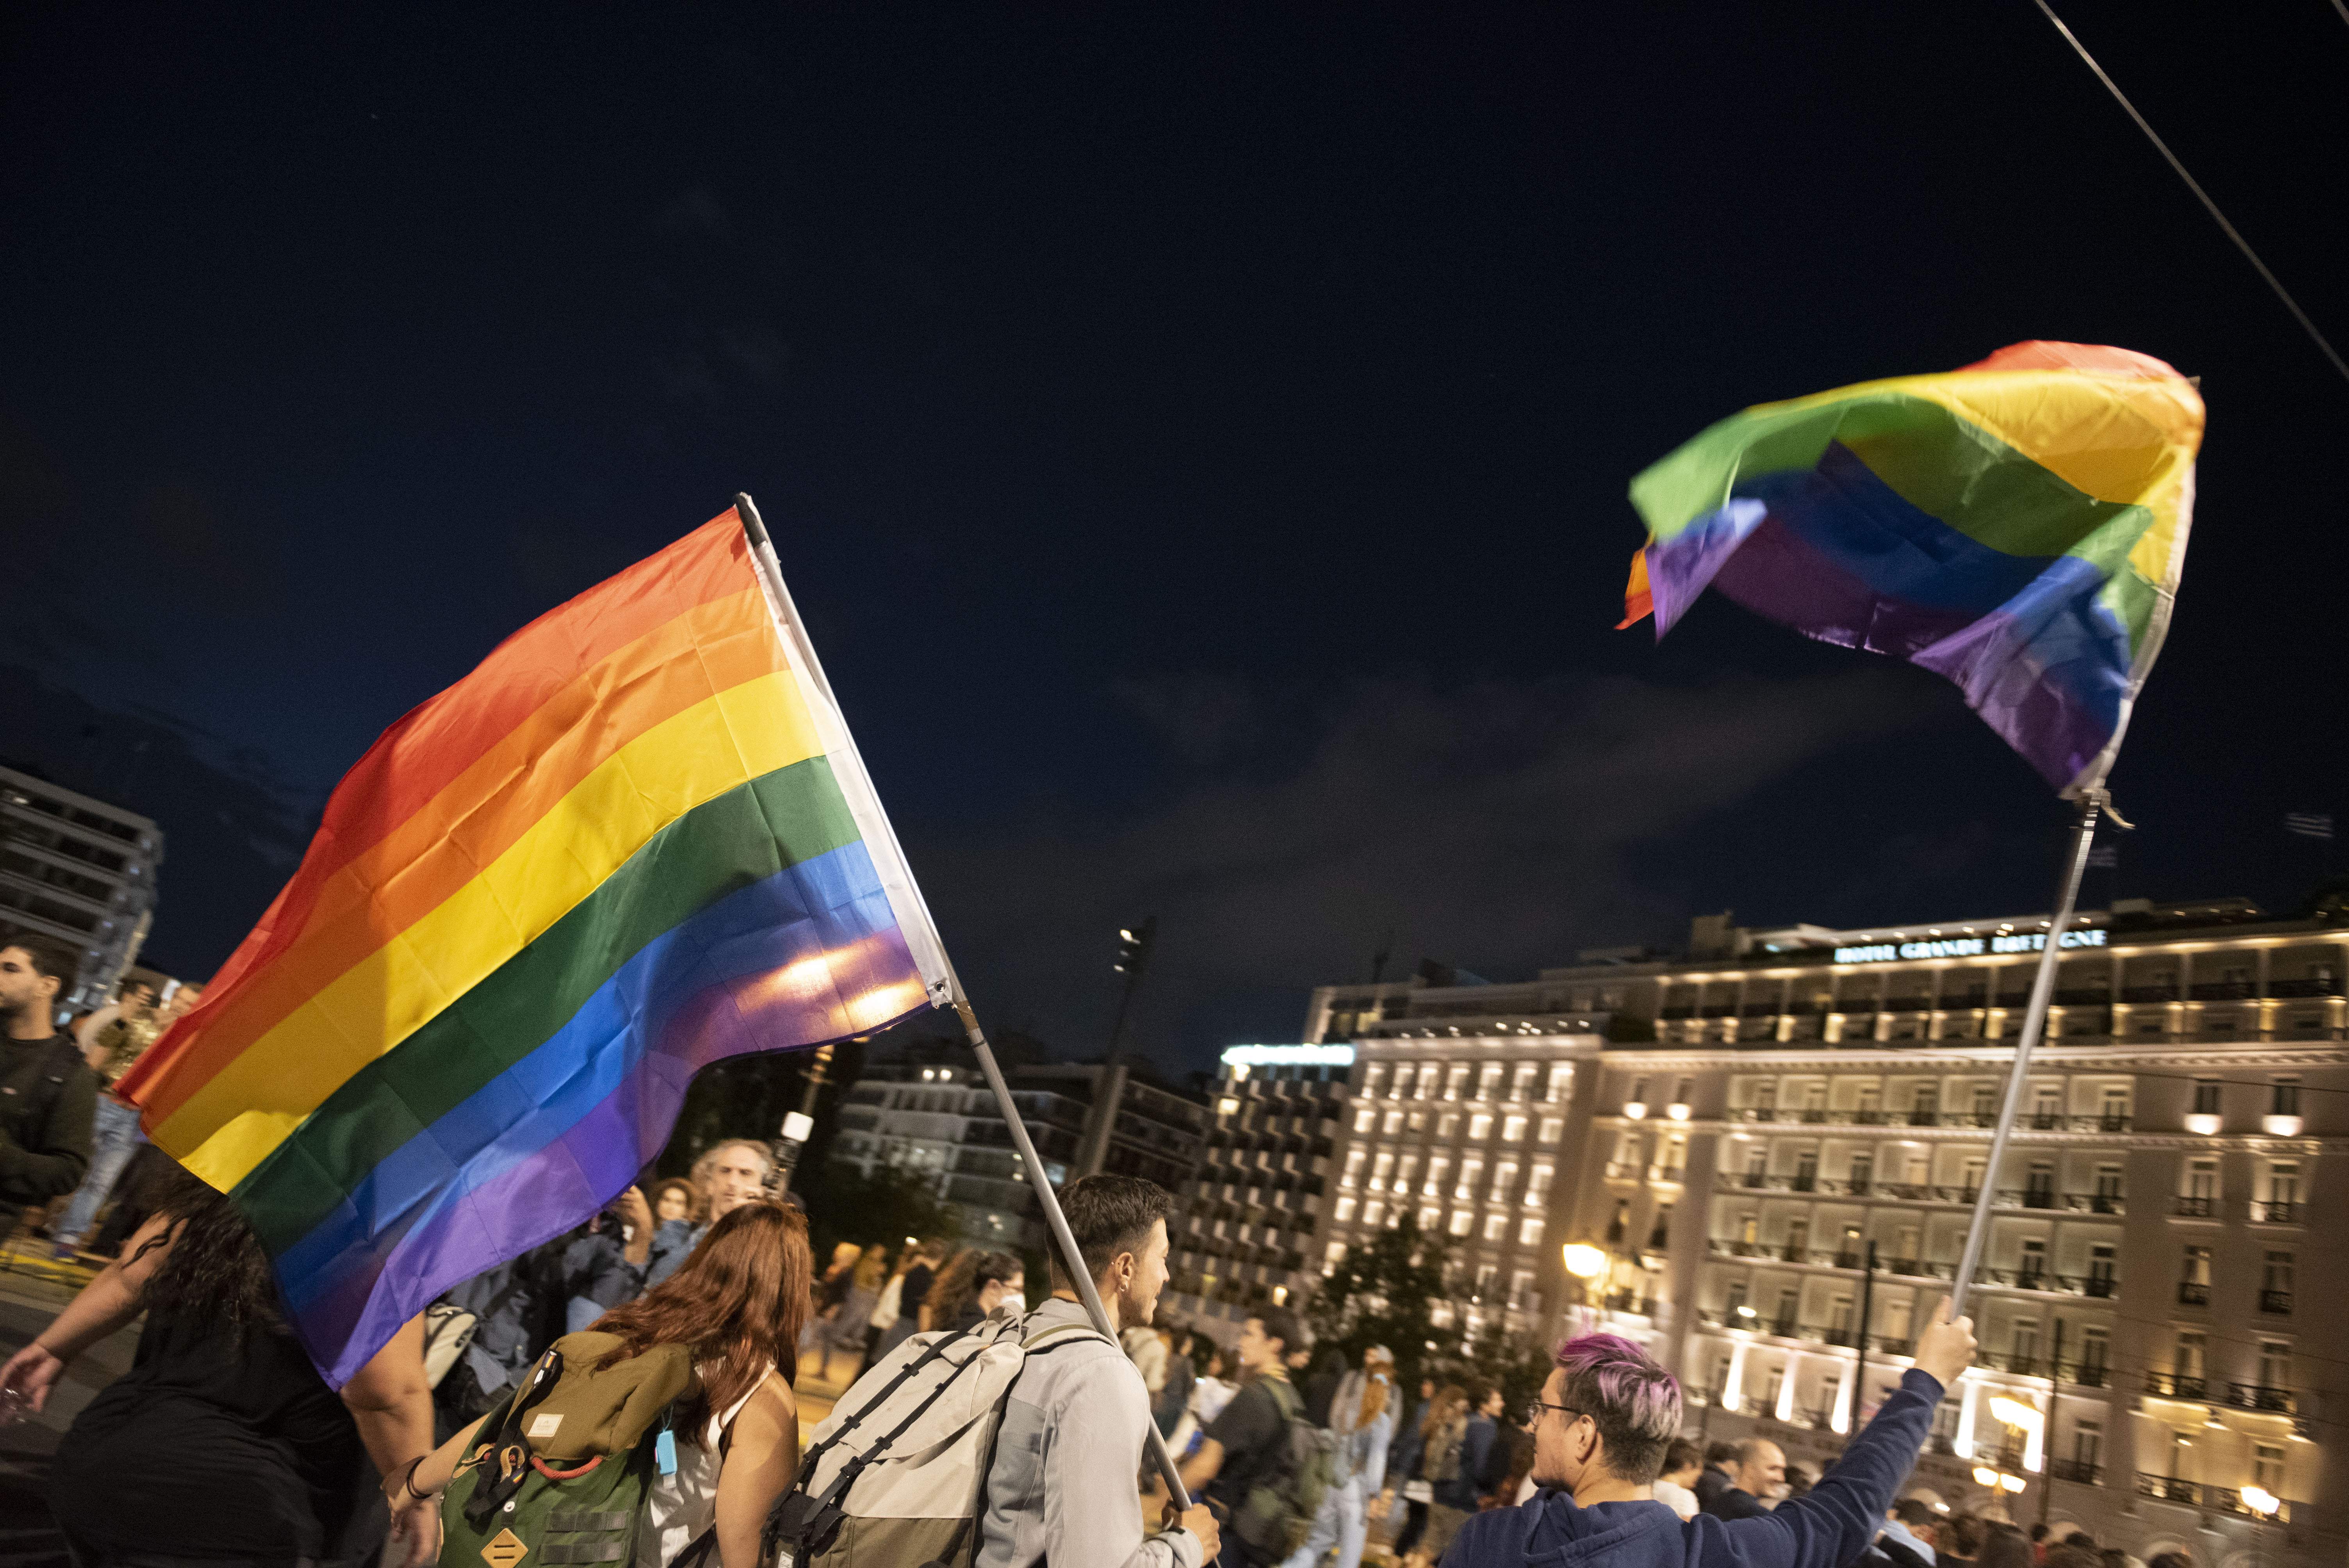 L'església ortodoxa grega demana excomunicar els diputats que van votar a favor del matrimoni homosexual